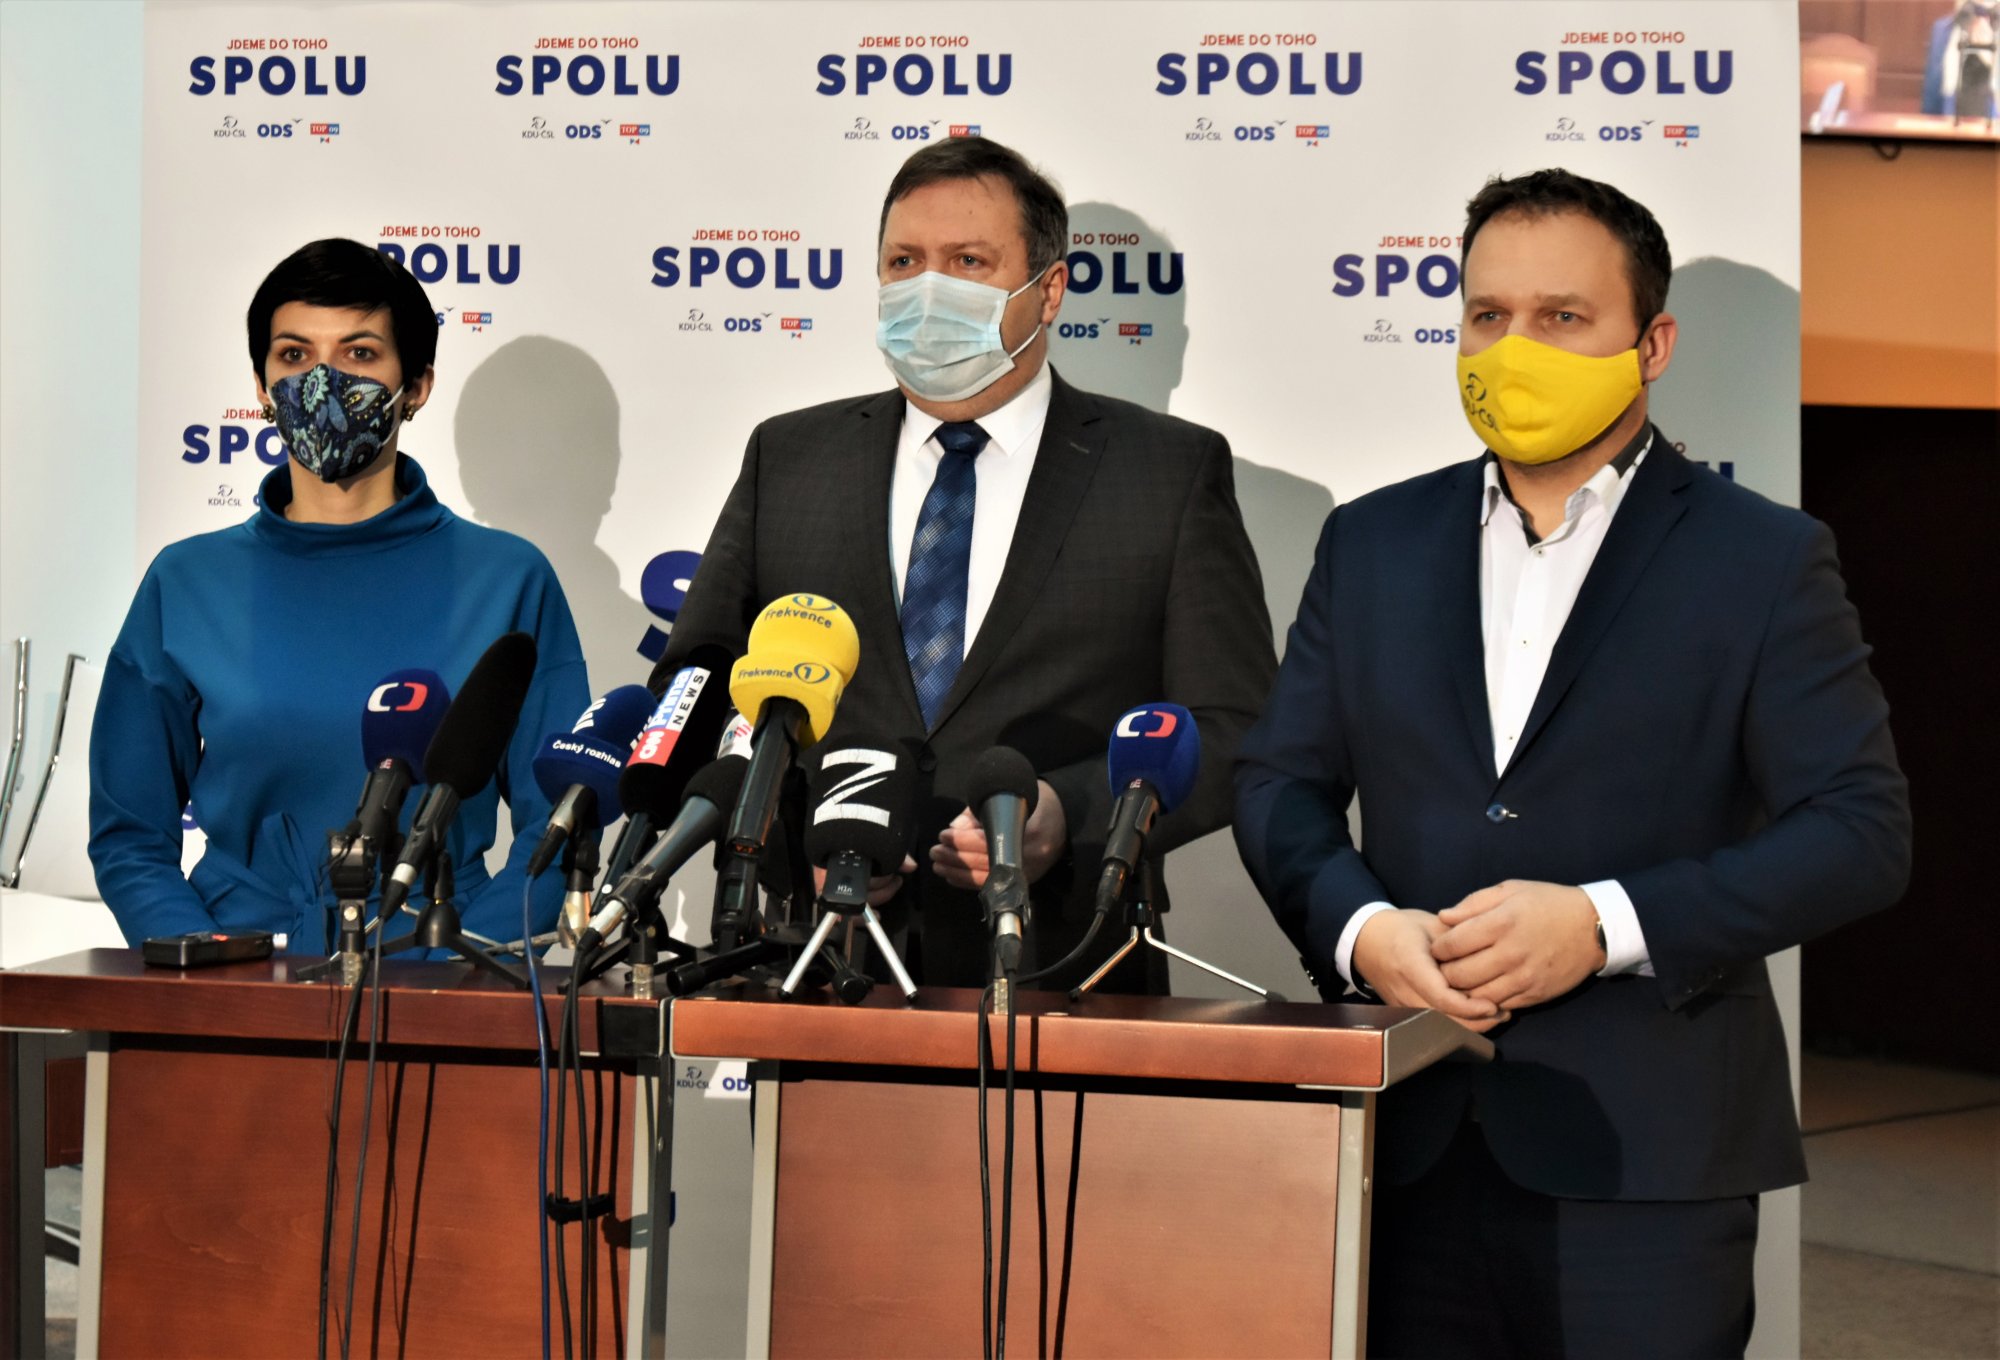 Trojkoalice SPOLU chce kvůli Bečvě zřídit sněmovní vyšetřovací komisi